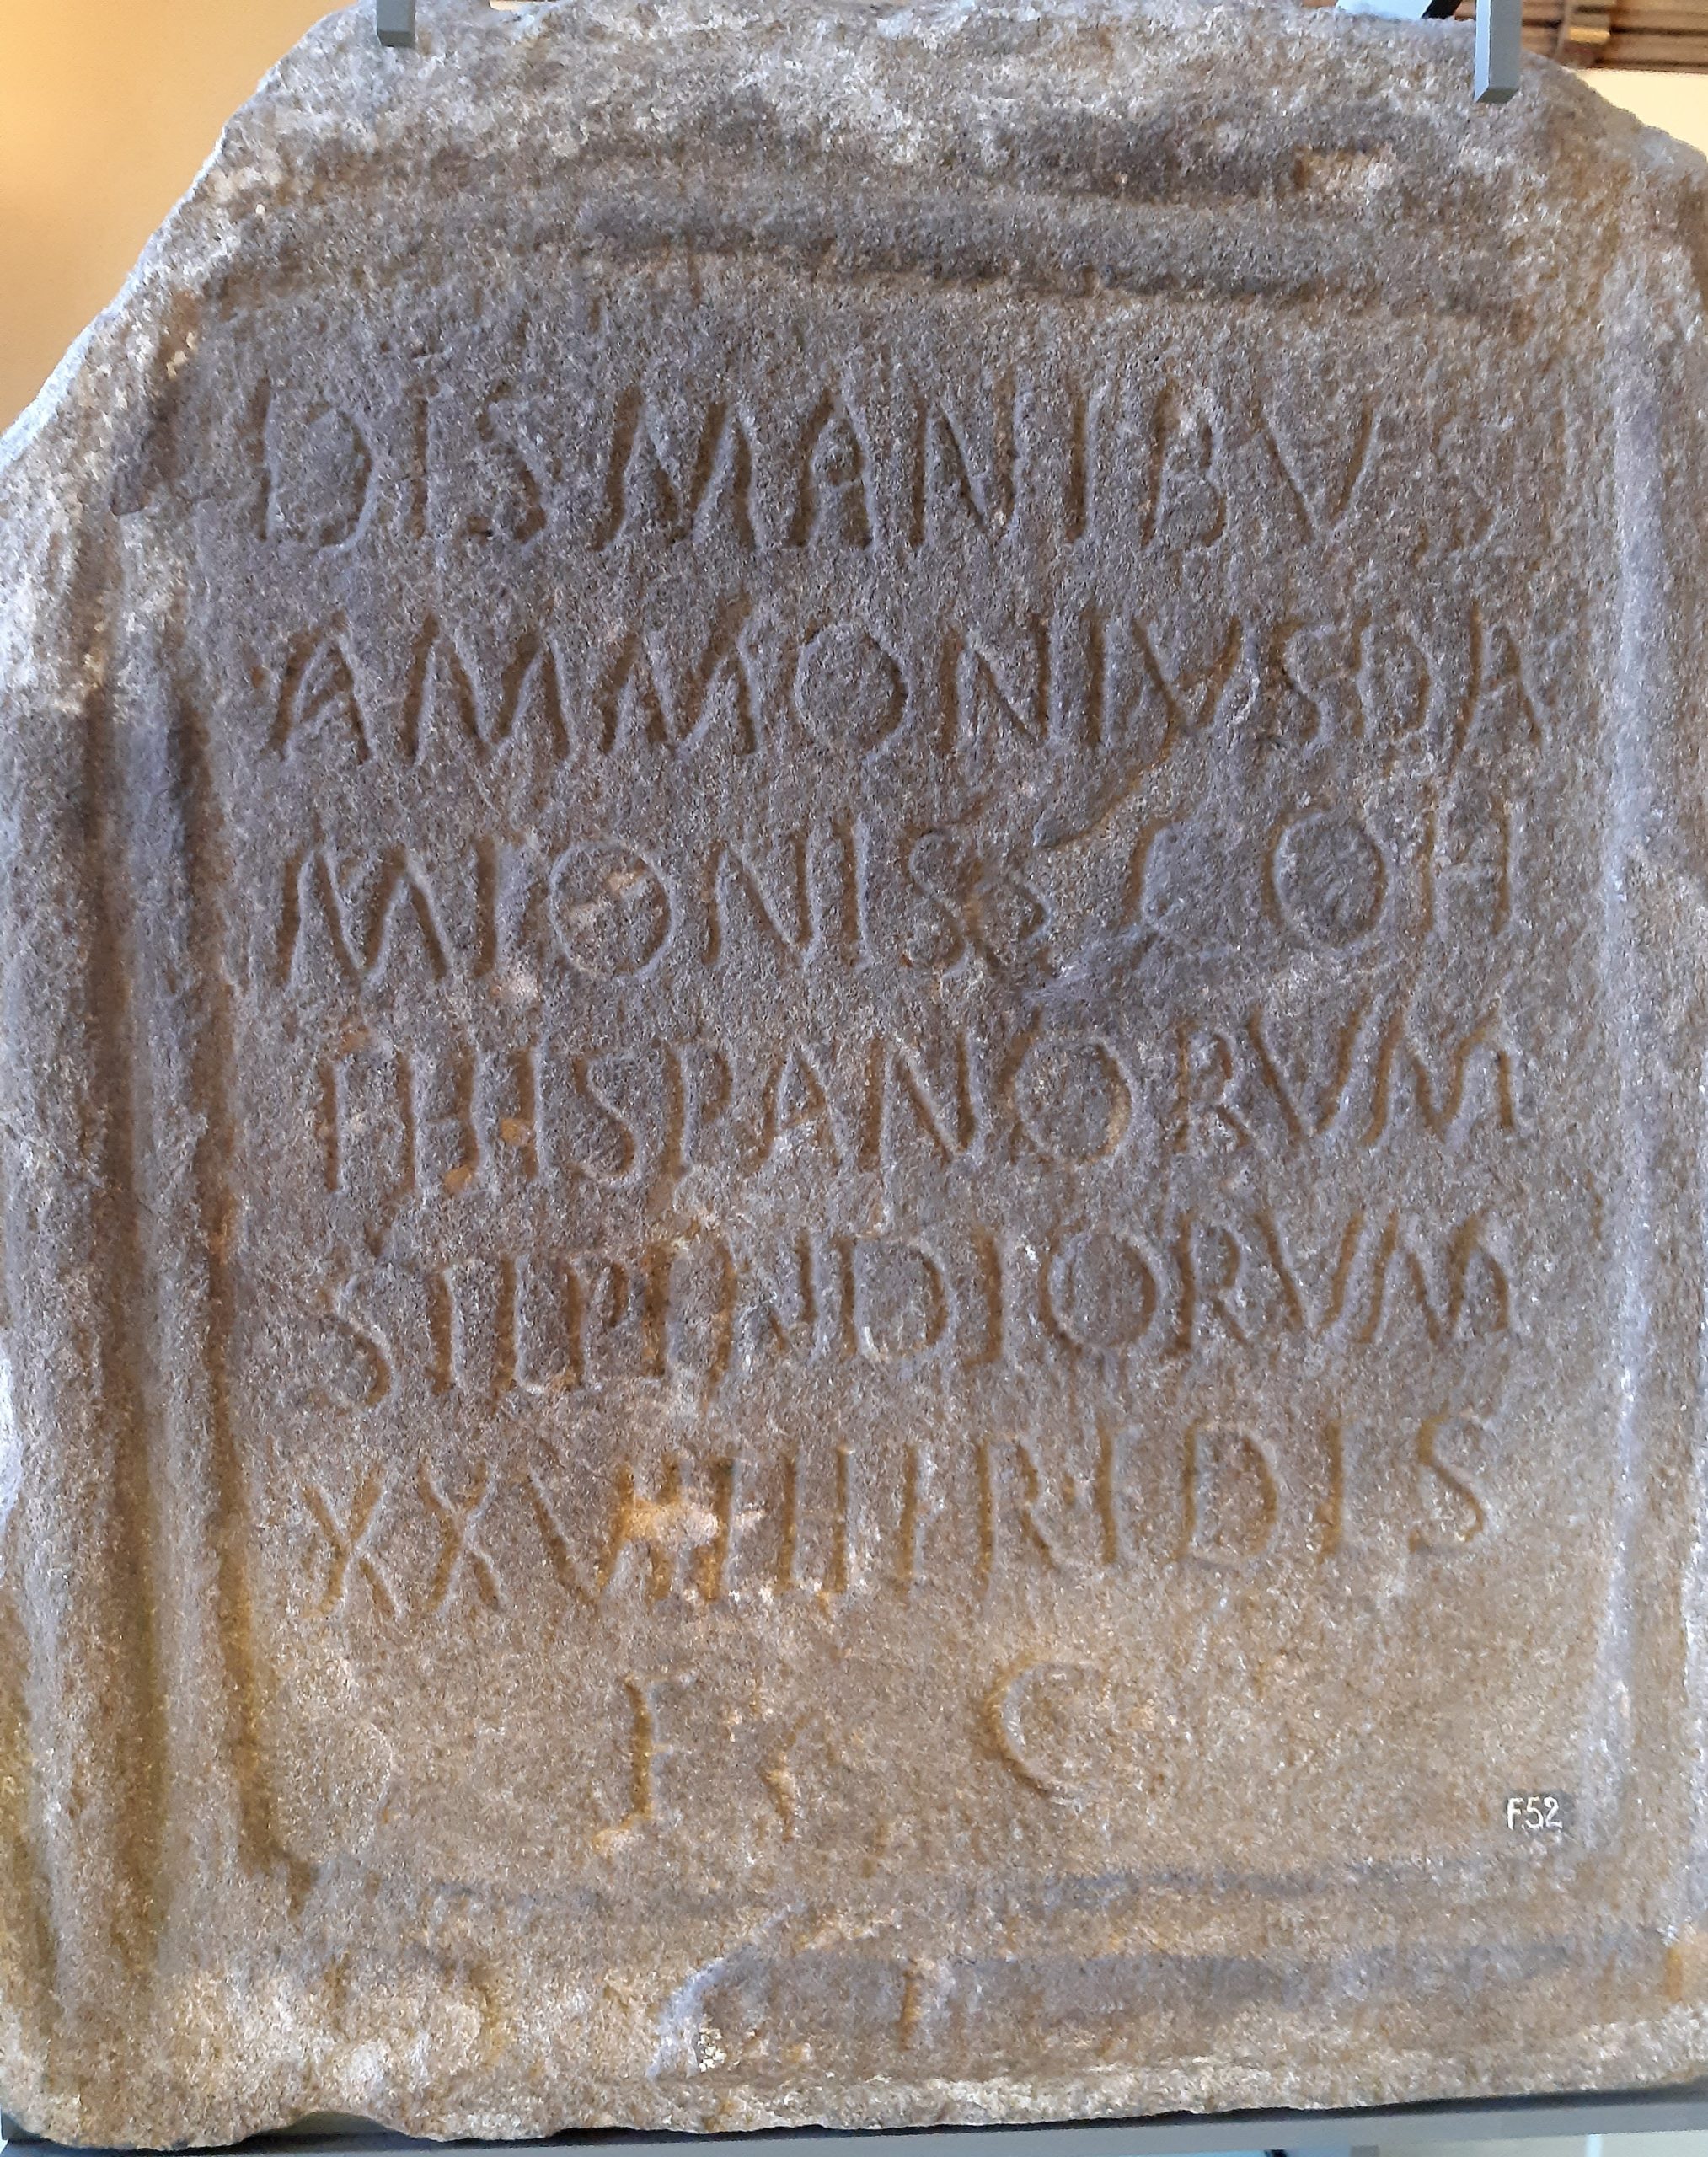 Tombstone of Ammonius centurion 1st Cohort of Spaniards 27 years service